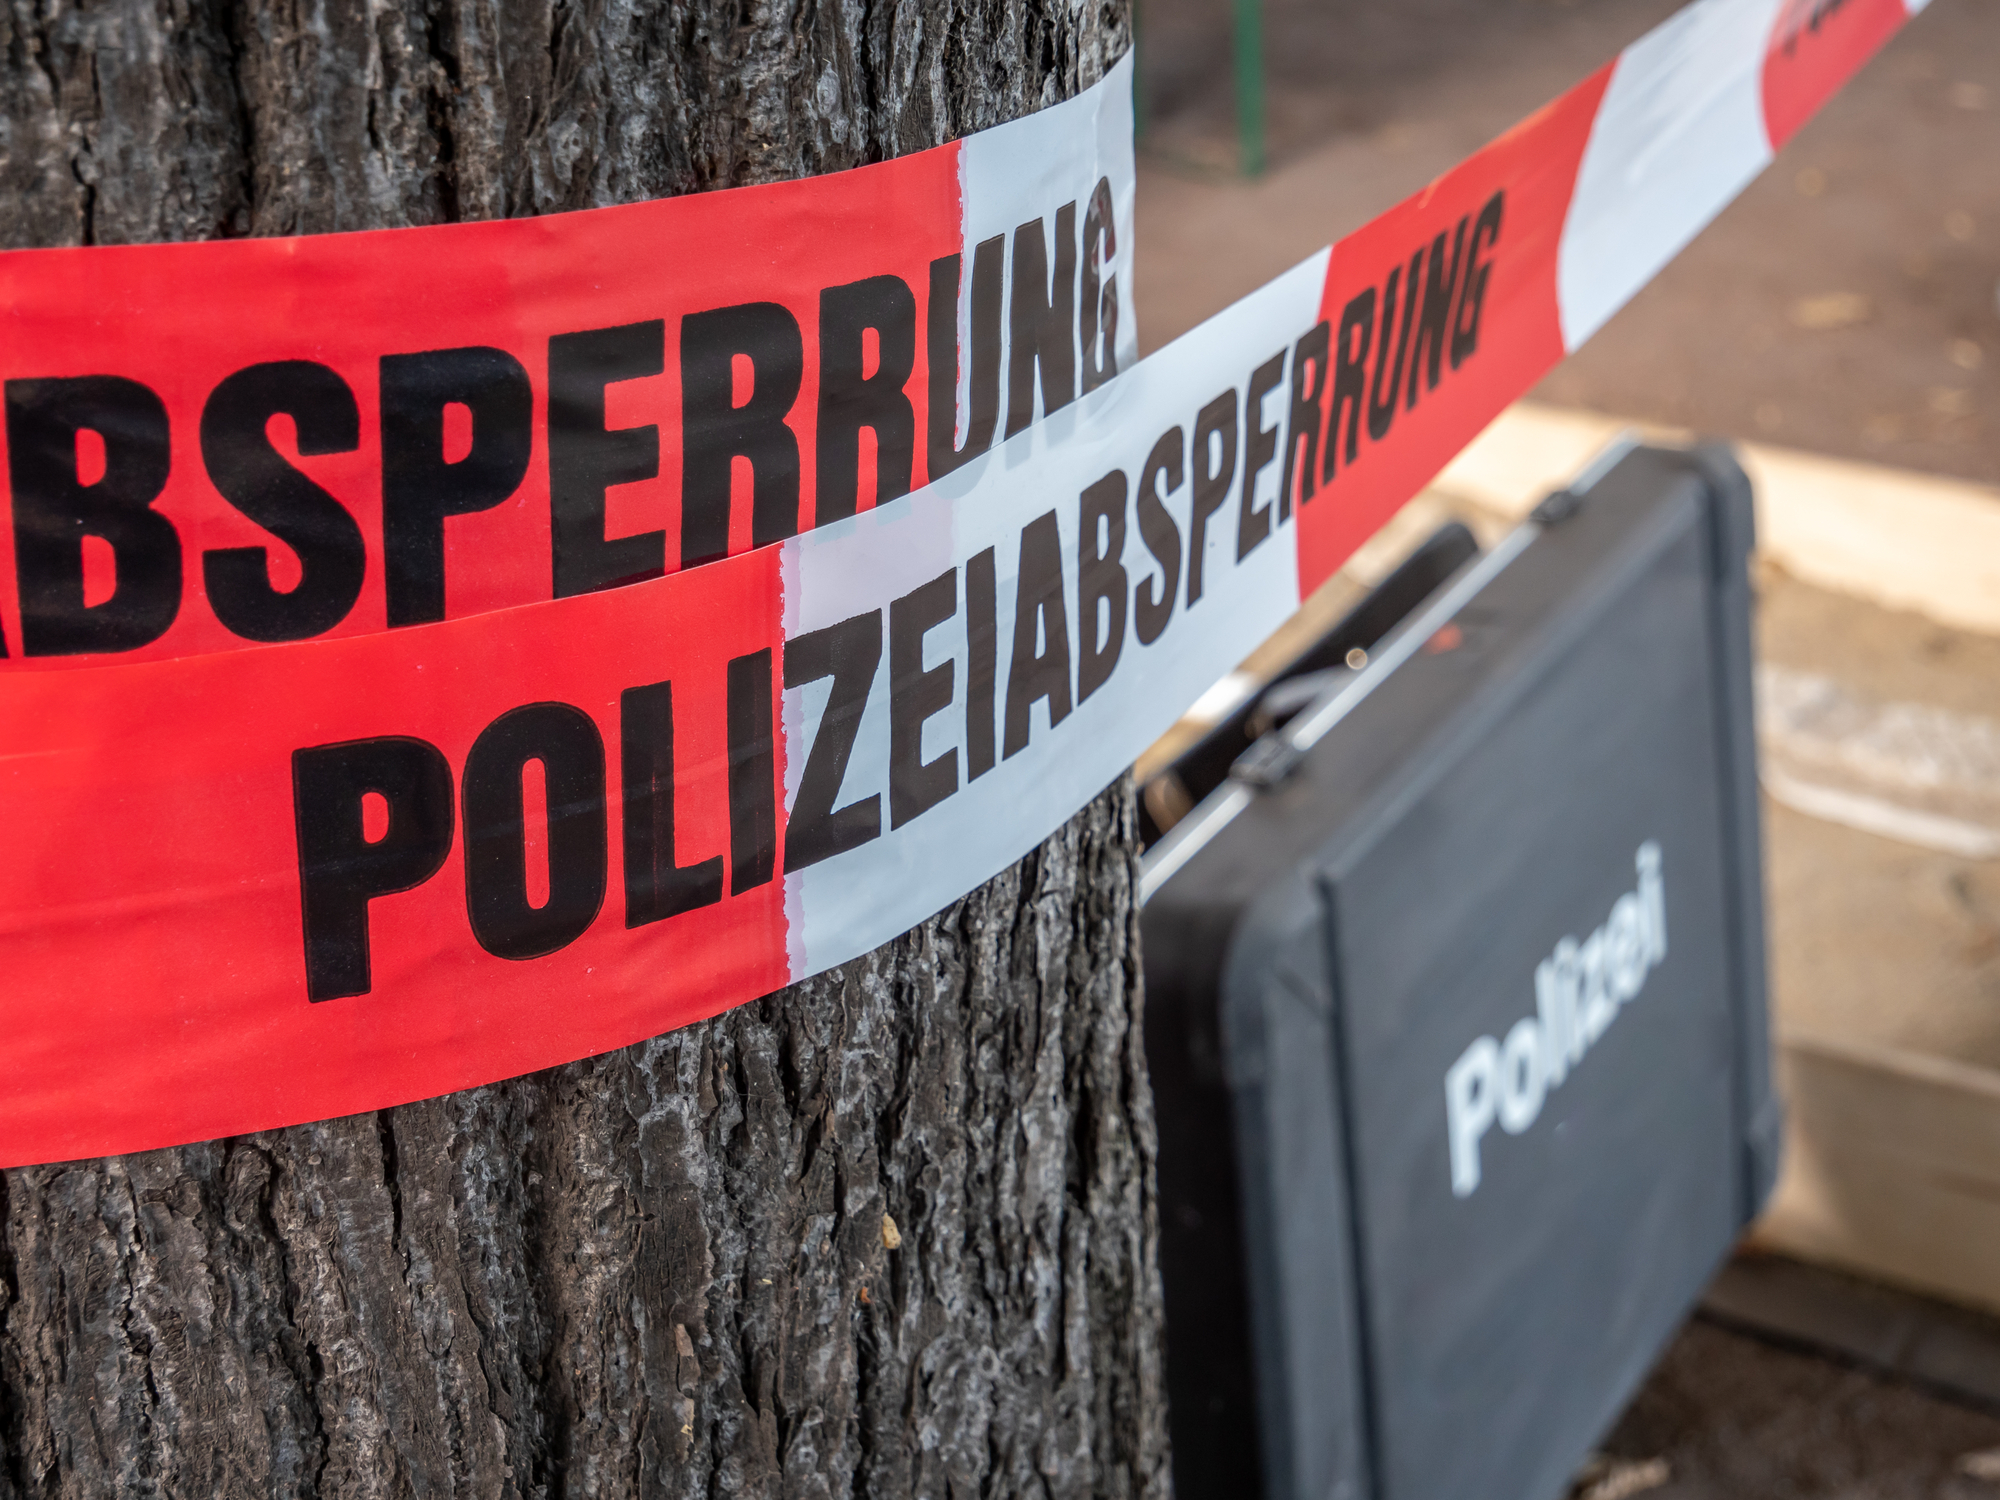 Internet-Star tot aufgefunden – Polizei findet zerstückelte Leichen im Wald